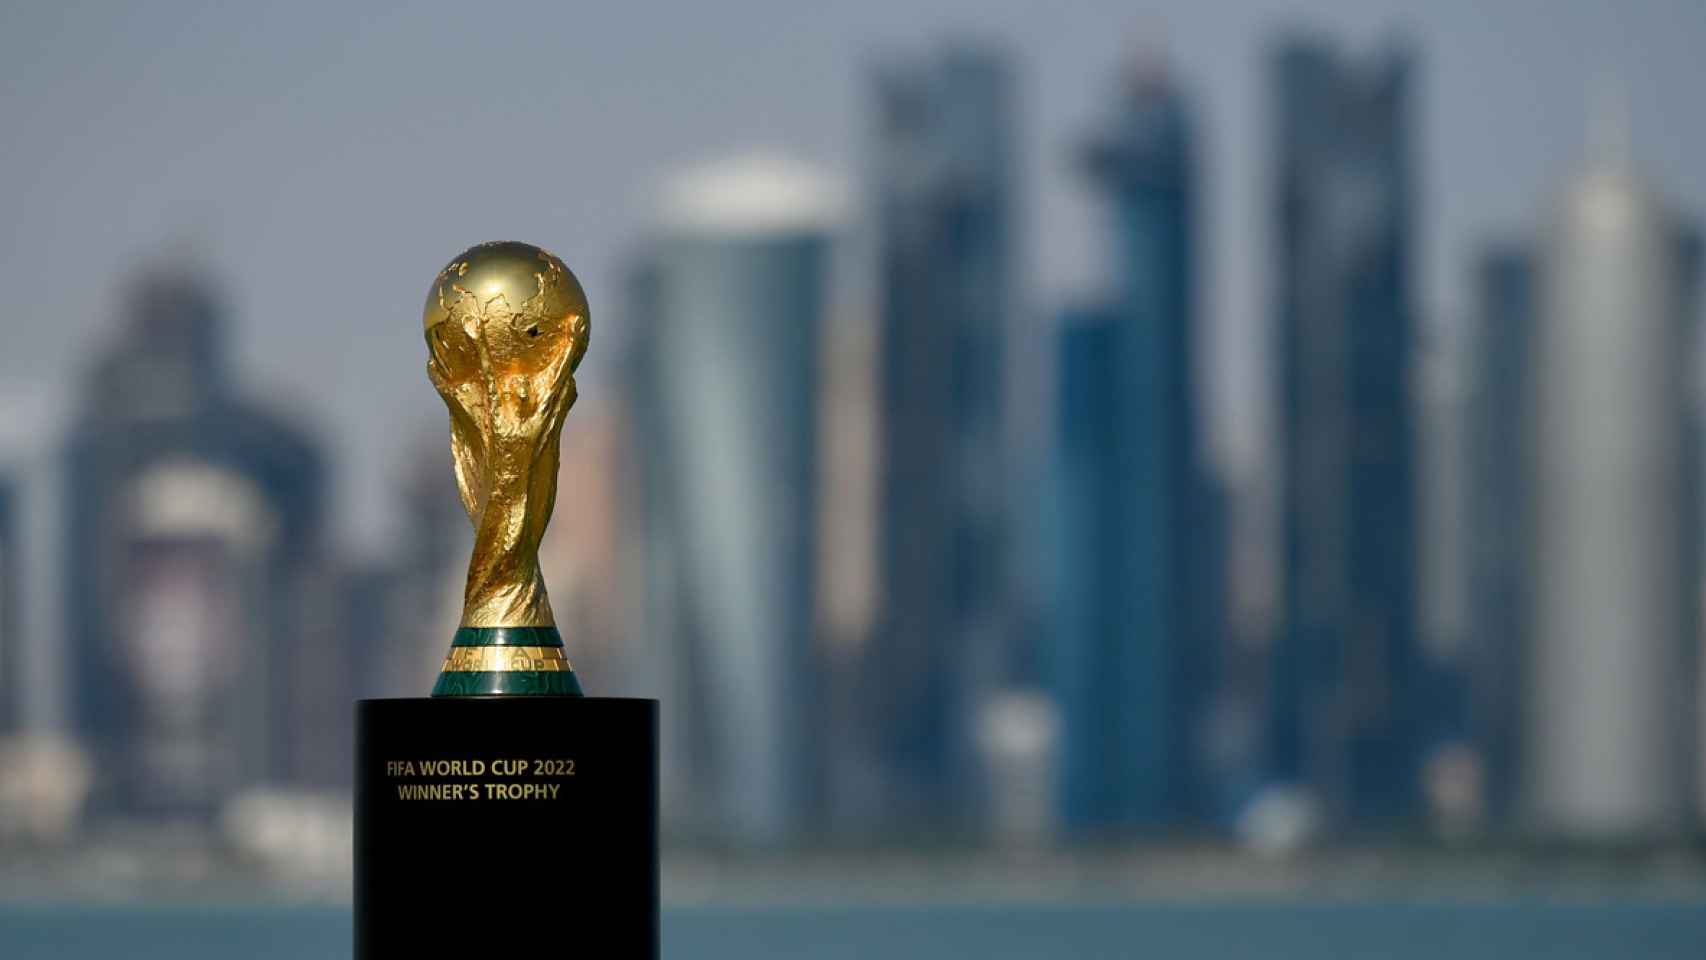 La Copa del Mundo, durante la celebración de Qatar 2022